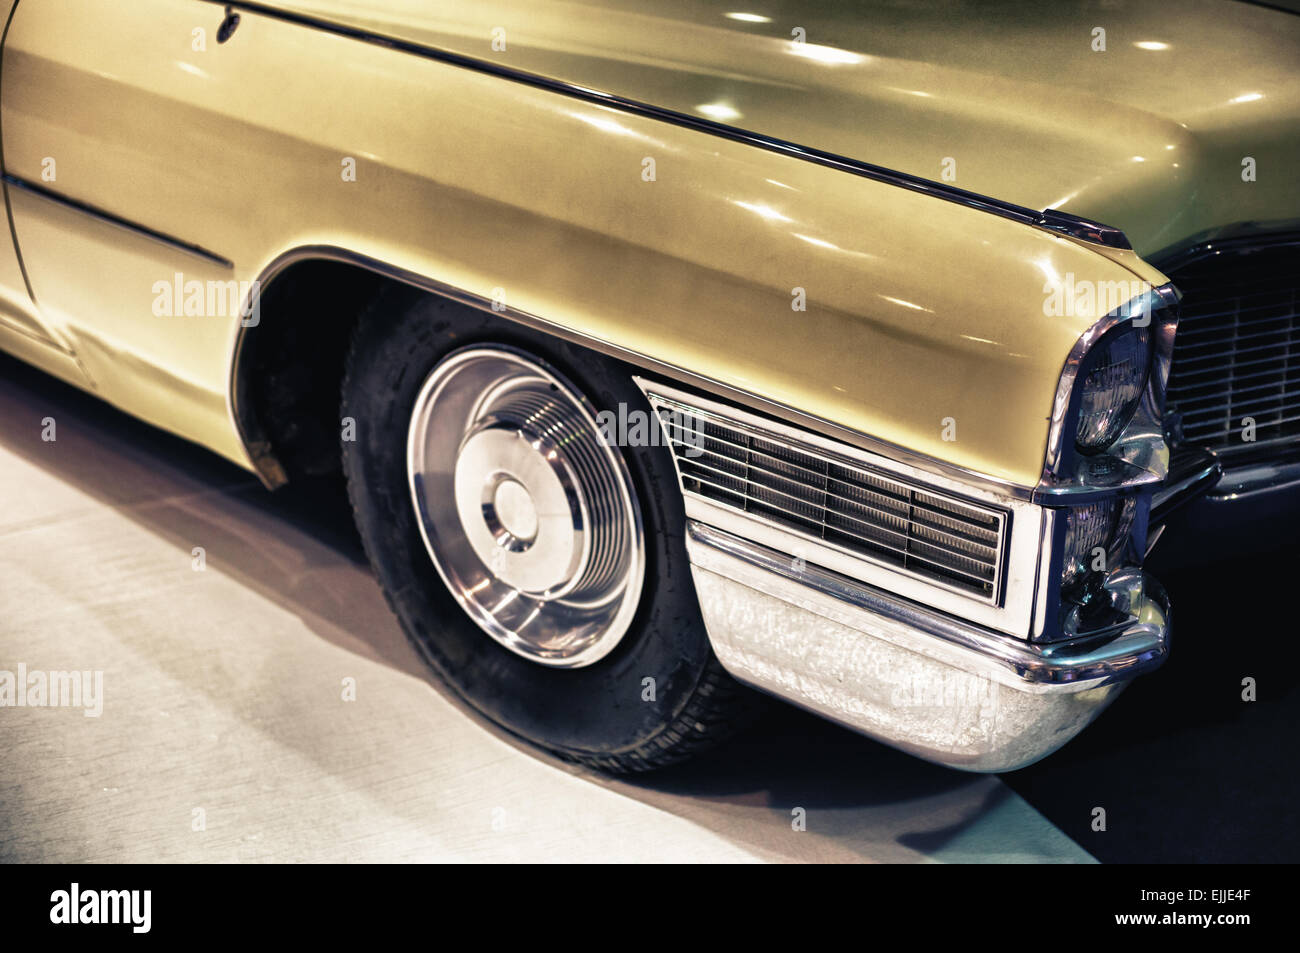 Détail de l'angle d'angle d'une vieille voiture classique avec filtre vintage Banque D'Images